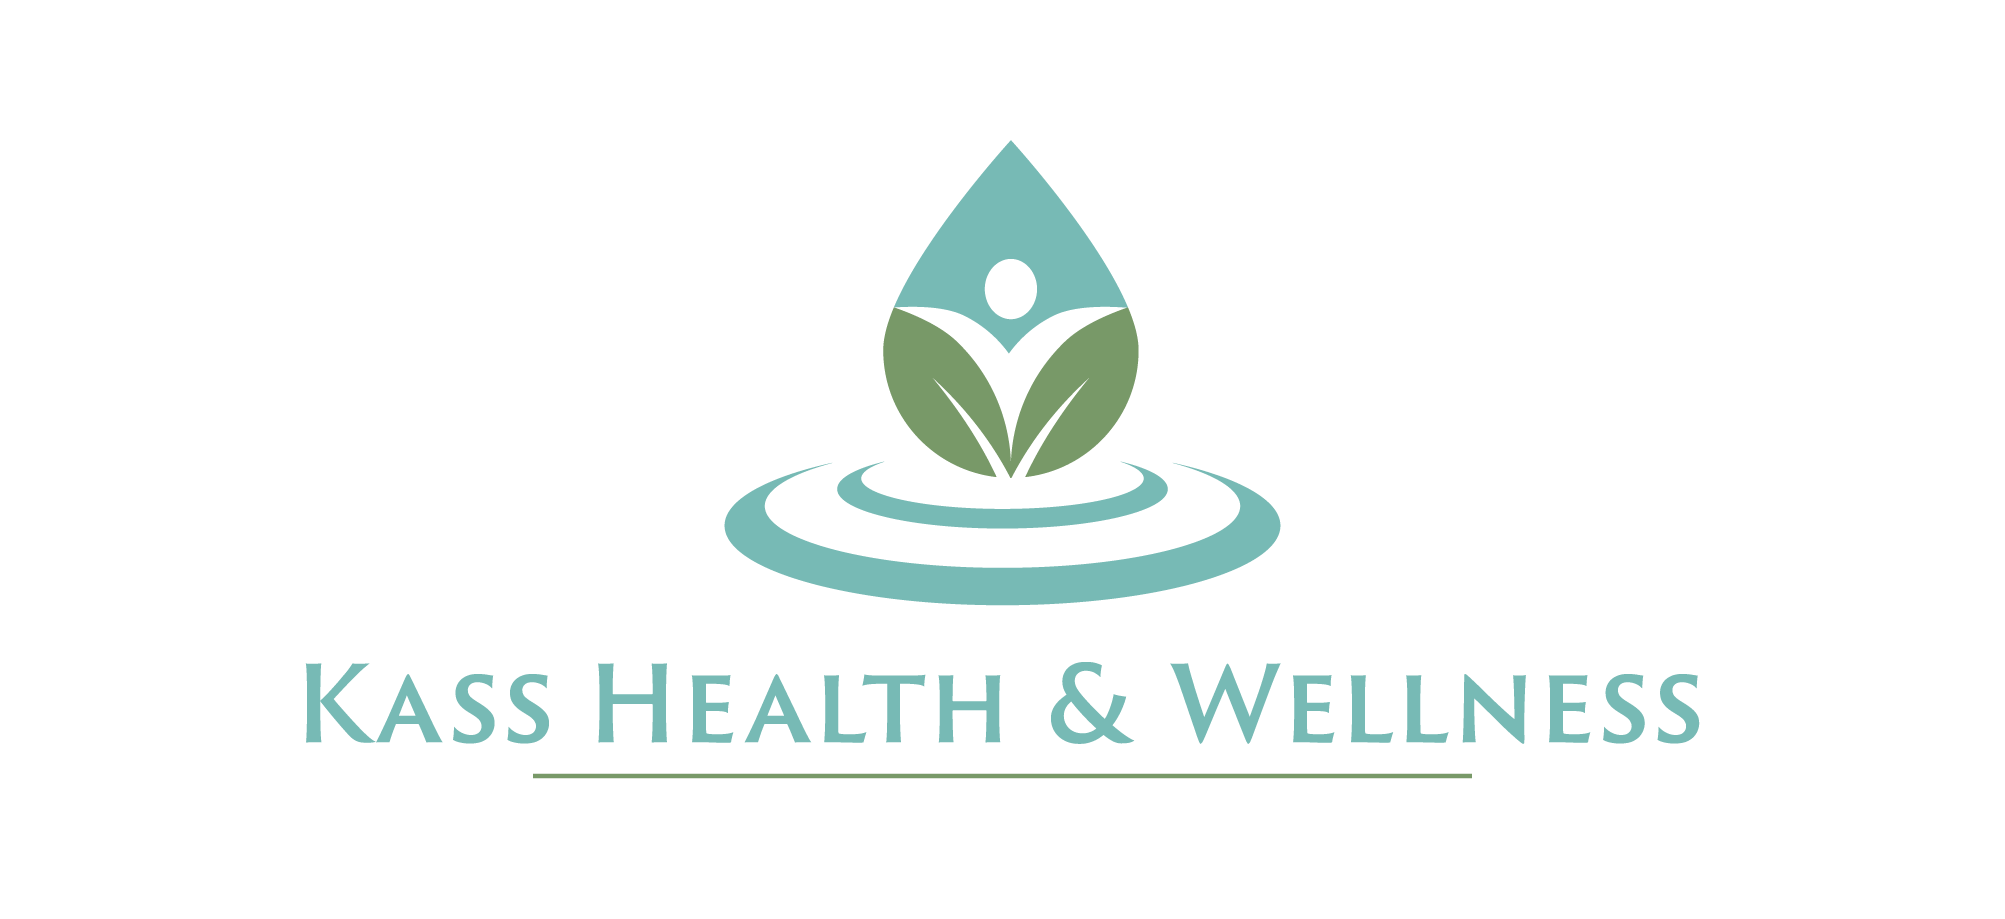 Kass Health & Wellness logo